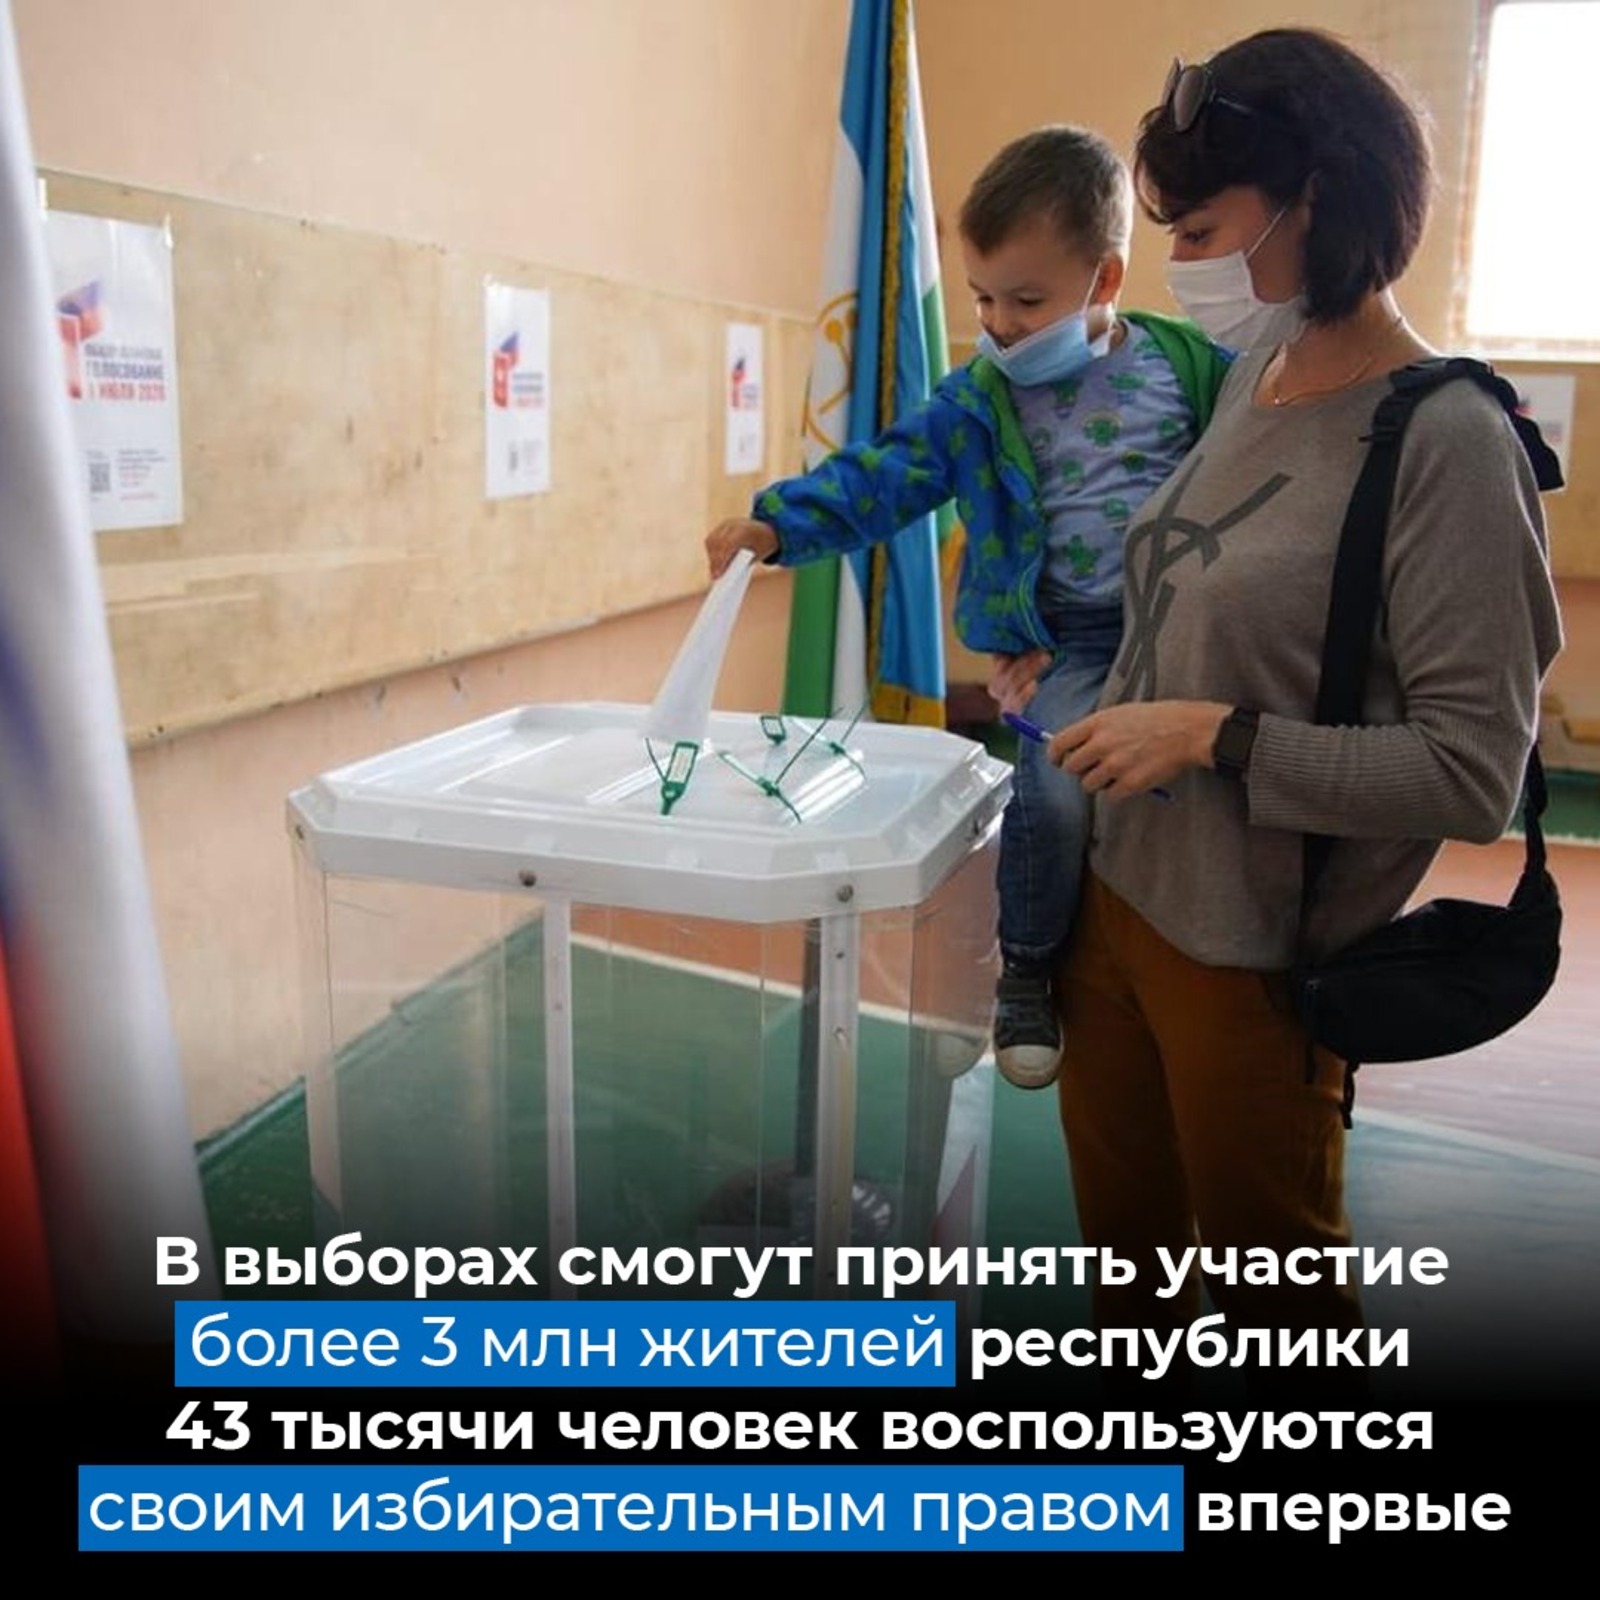 В России идет второй день голосования на выборах, которые продлятся до 19 сентября